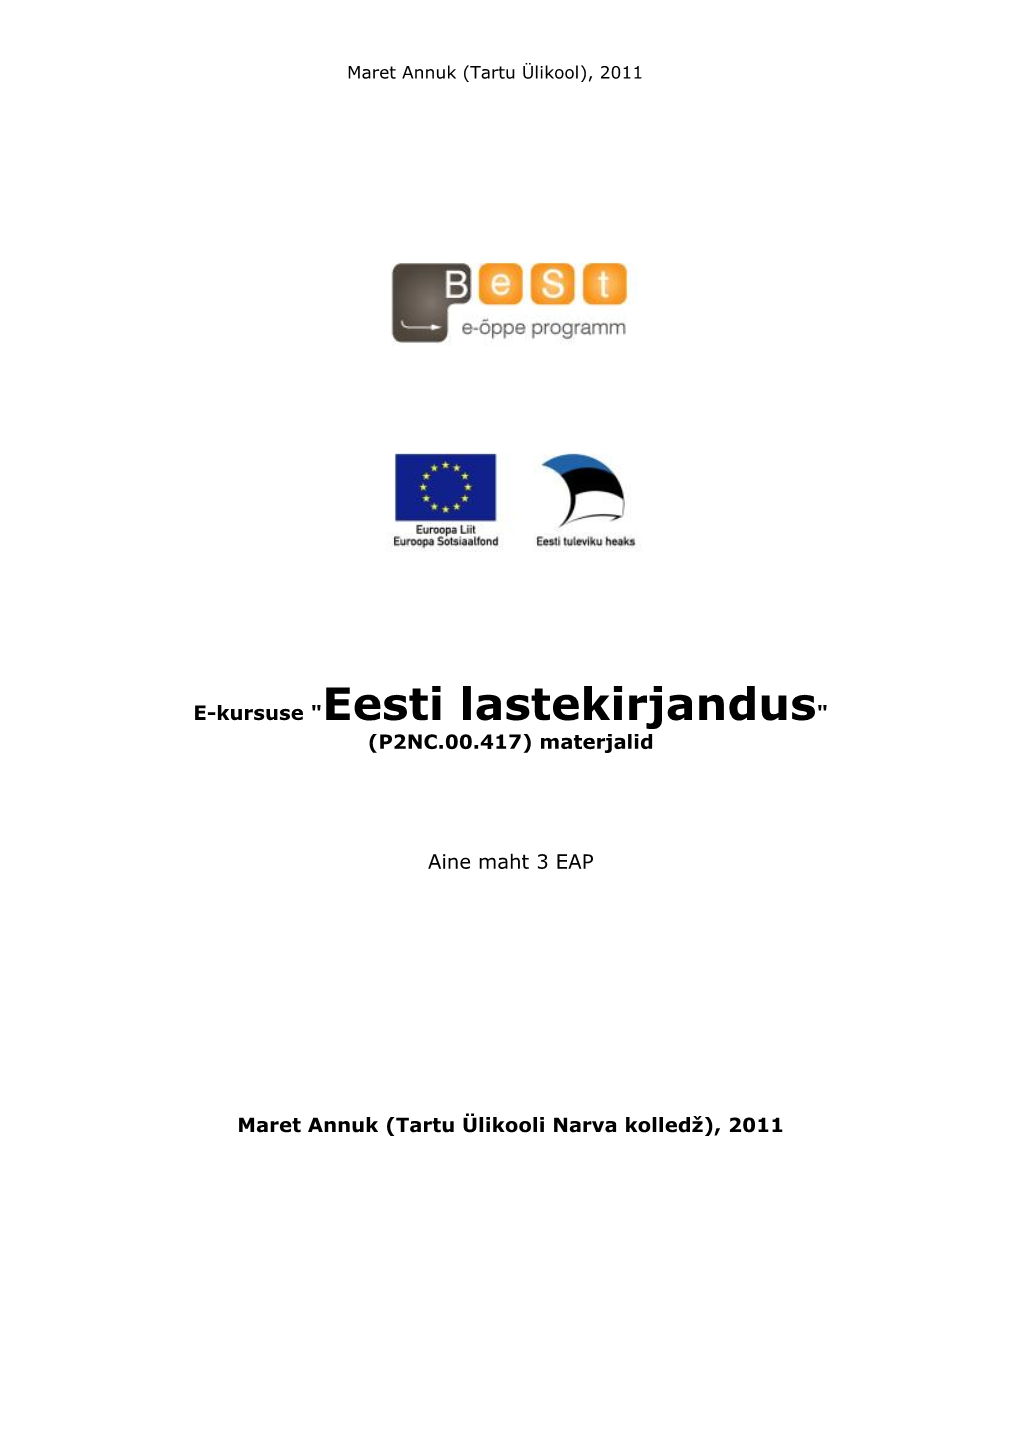 Eesti Lastekirjandus" (P2NC.00.417) Materjalid